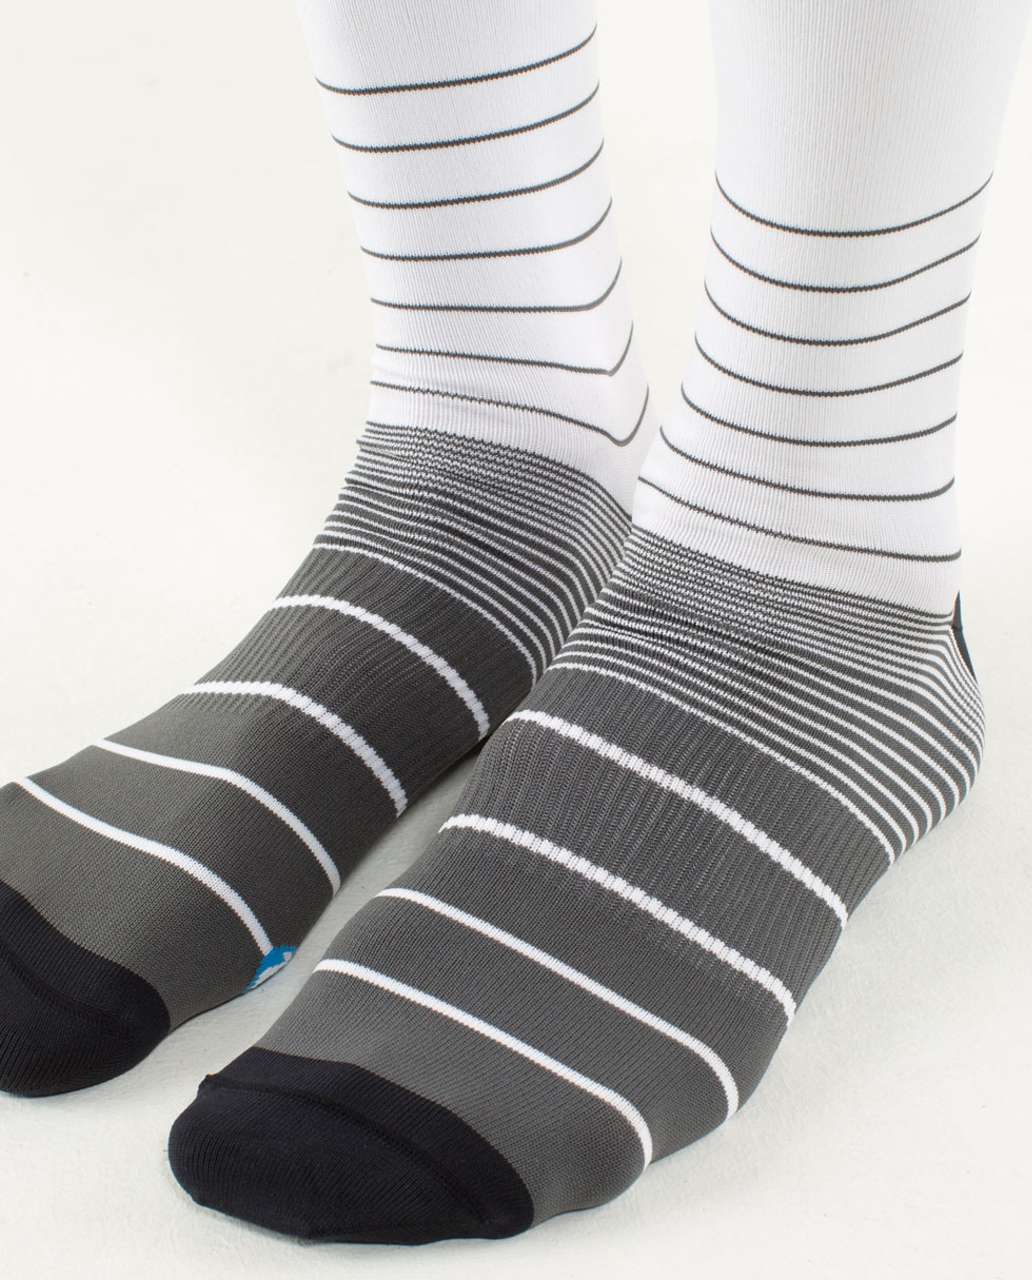 Lululemon Daily Sock - Vibe Stripe Soot Light